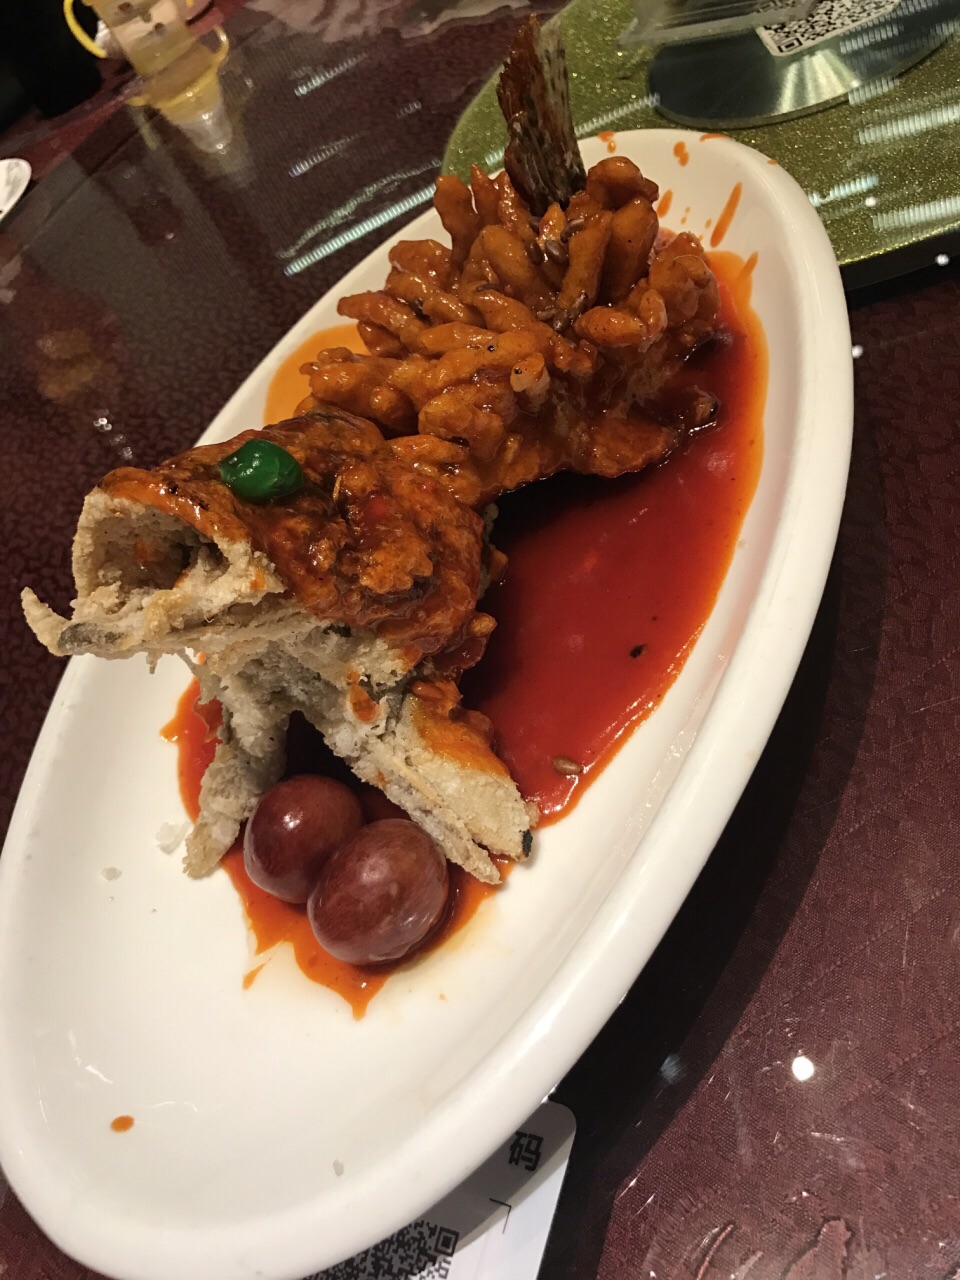 松鹤楼是苏州的老招牌,典型的苏帮菜,口味偏甜最喜欢吃松鼠桂鱼